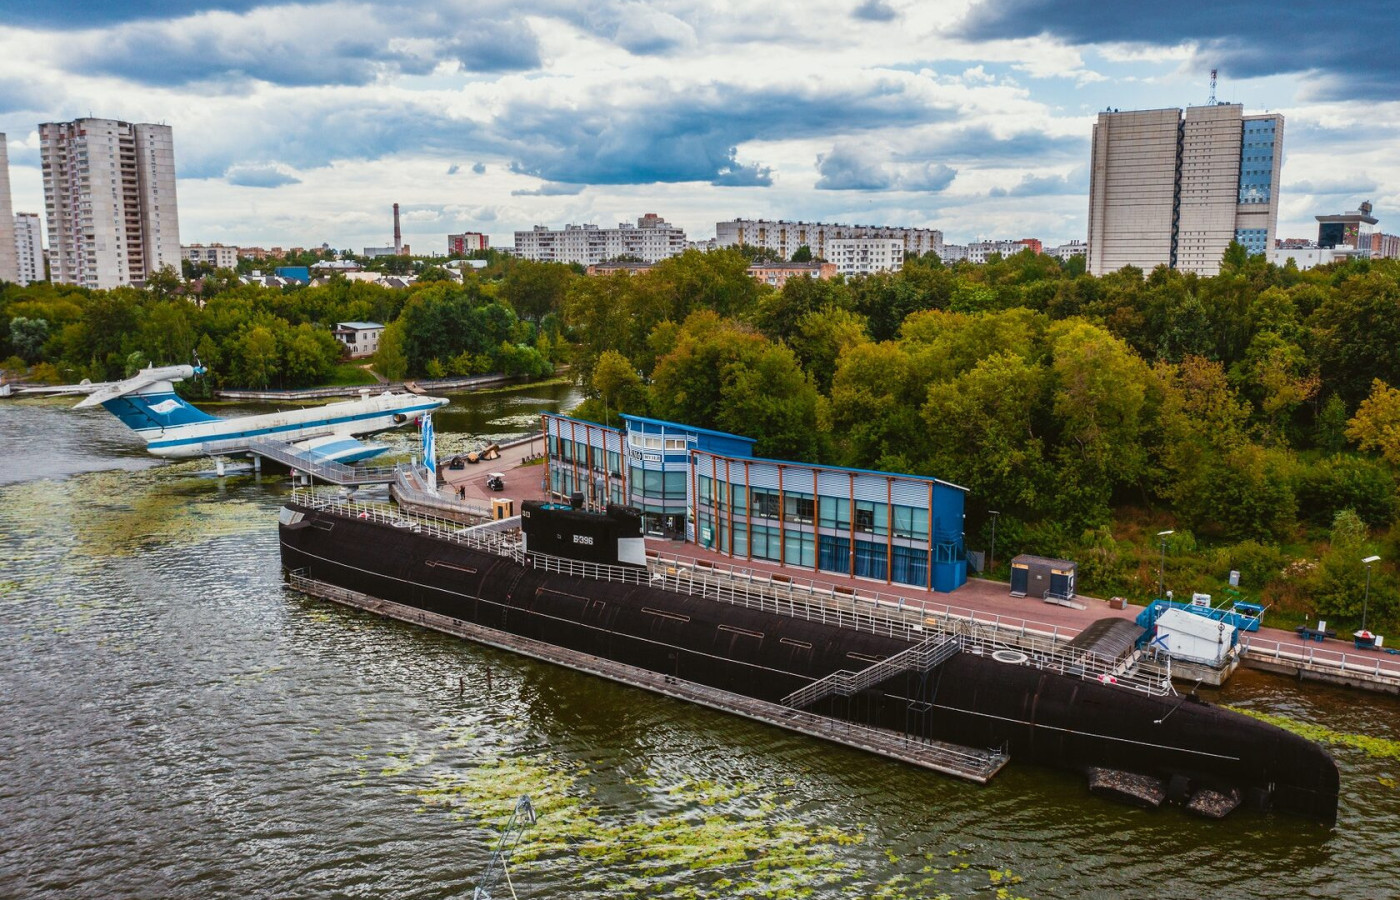 Подводная лодка Б-396 «Новосибирский комсомолец». Фото: музейно-парковый комплекс «Северное Тушино»